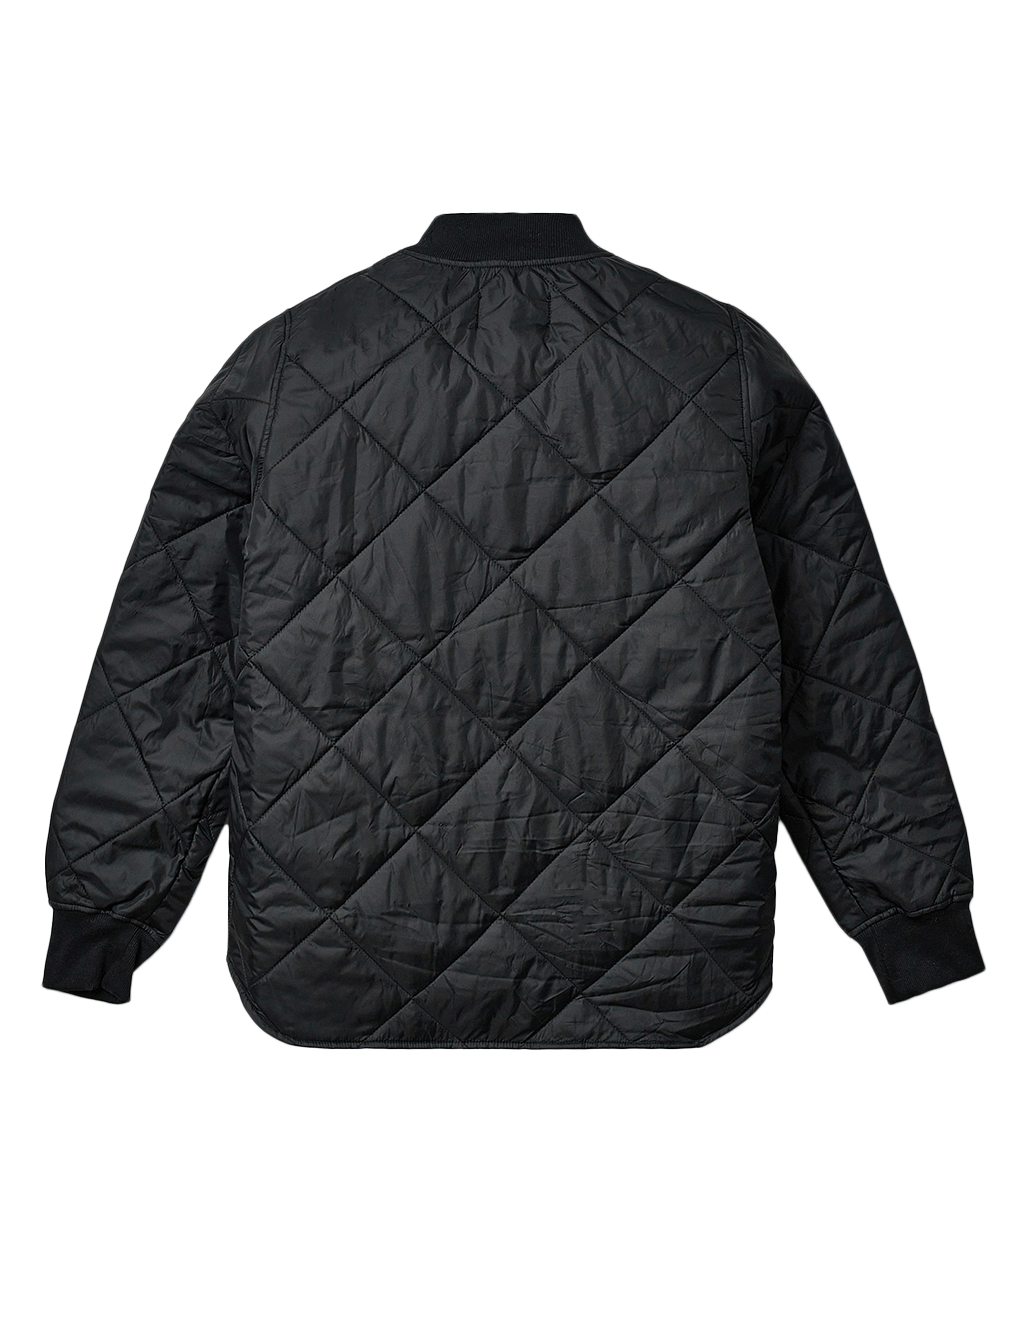 HUSTLER® Quilted Shirt Jacket - Black - Back